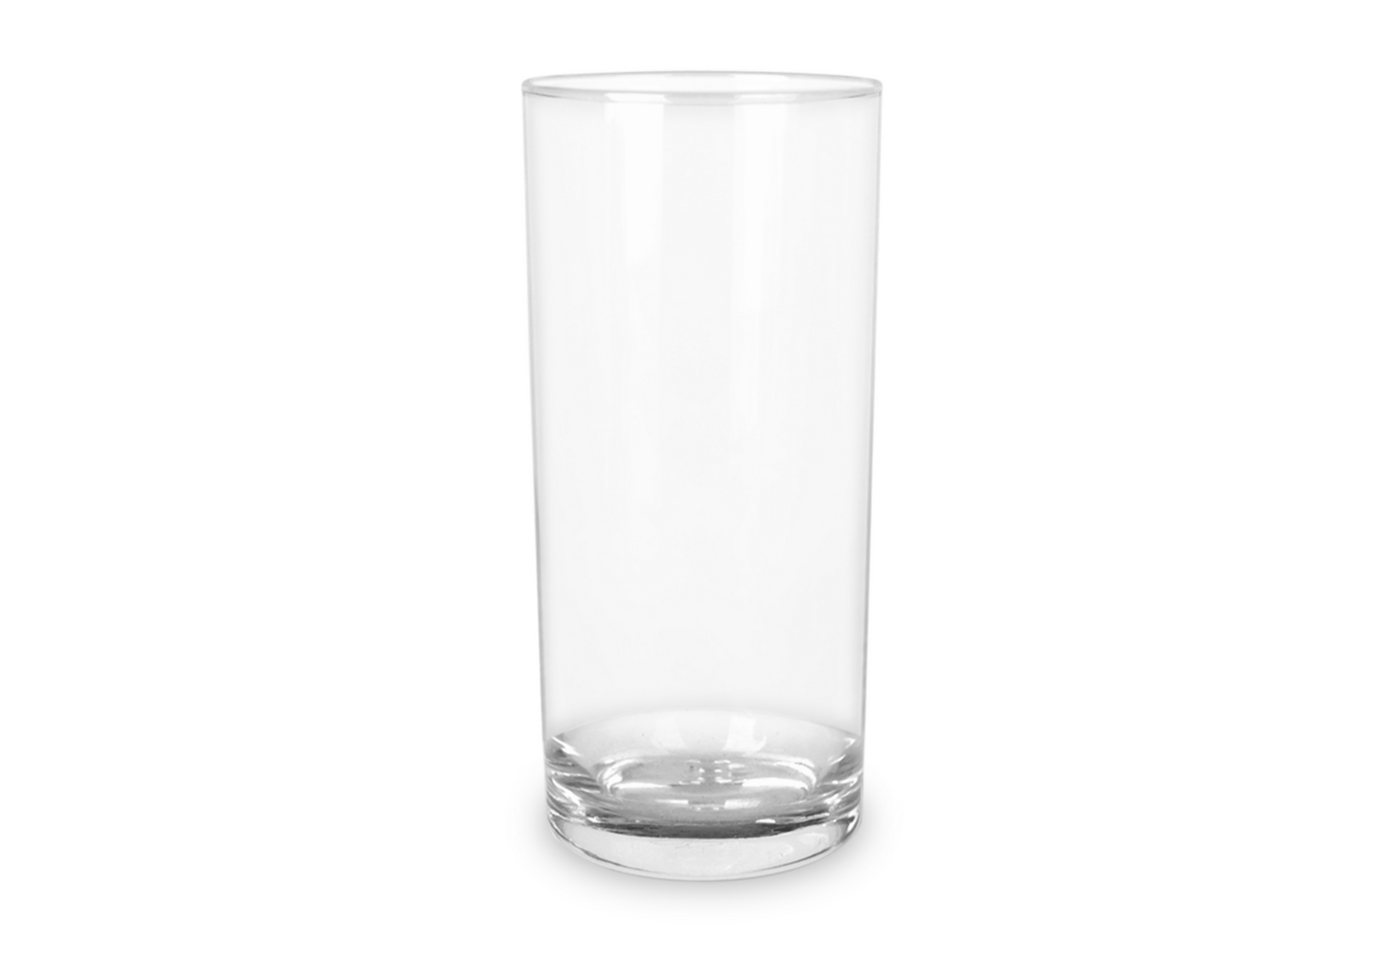 Mr. & Mrs. Panda Glas 200 ml Eule Frankreich - Transparent - Geschenk, Wasserglas, Spruch s, Premium Glas, Stilvolle Gravur von Mr. & Mrs. Panda